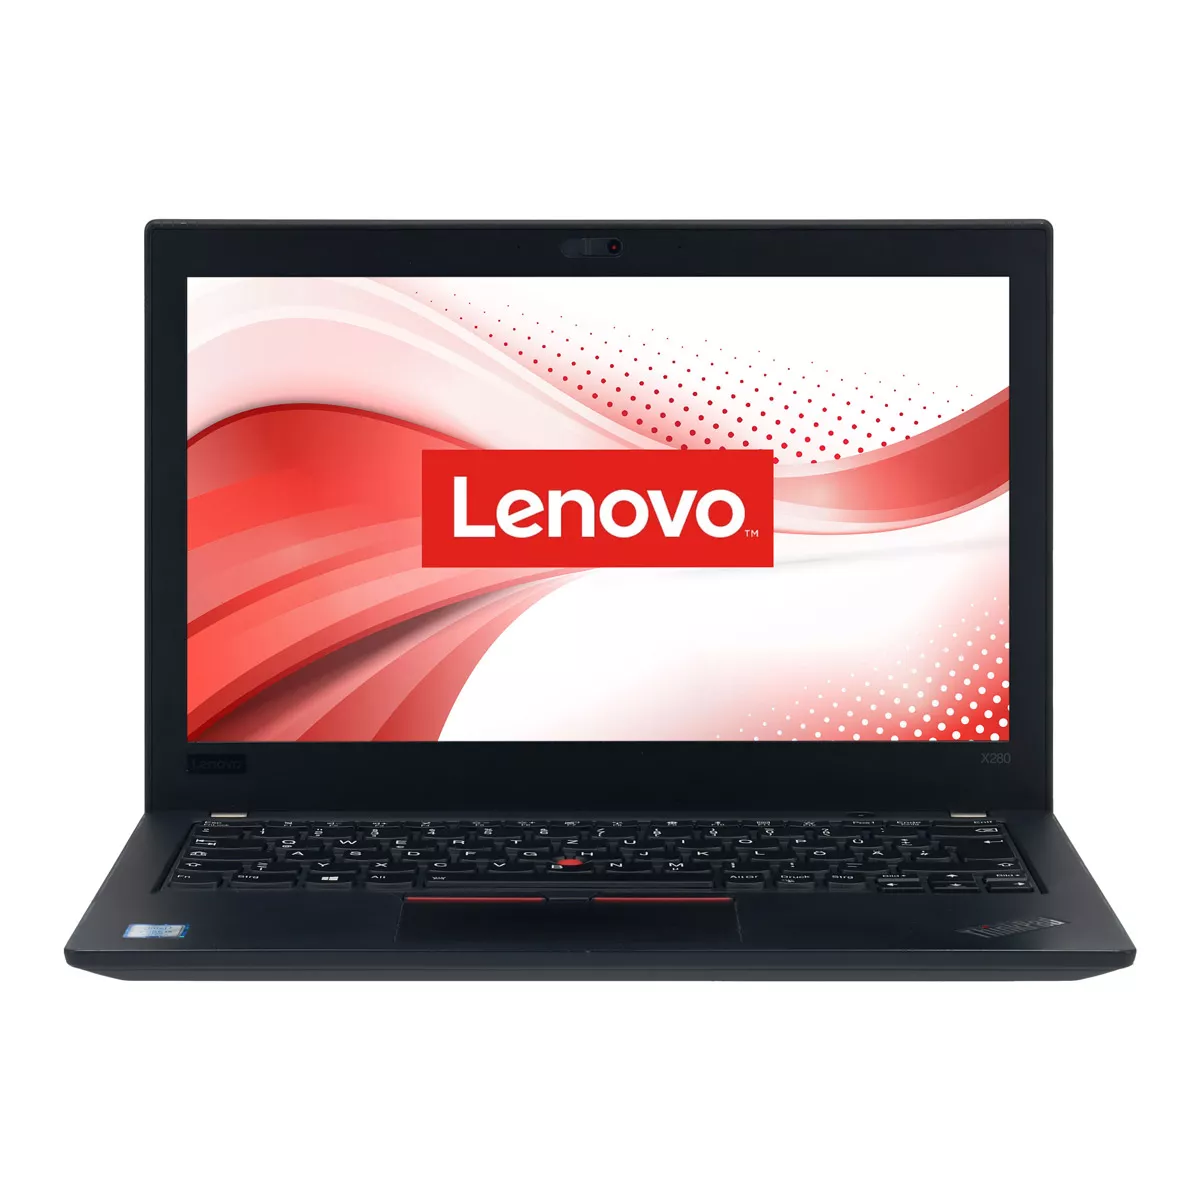 Lenovo ThinkPad X280 Core i5 8350U 8 GB 240 GB M.2 nVME SSD Webcam B